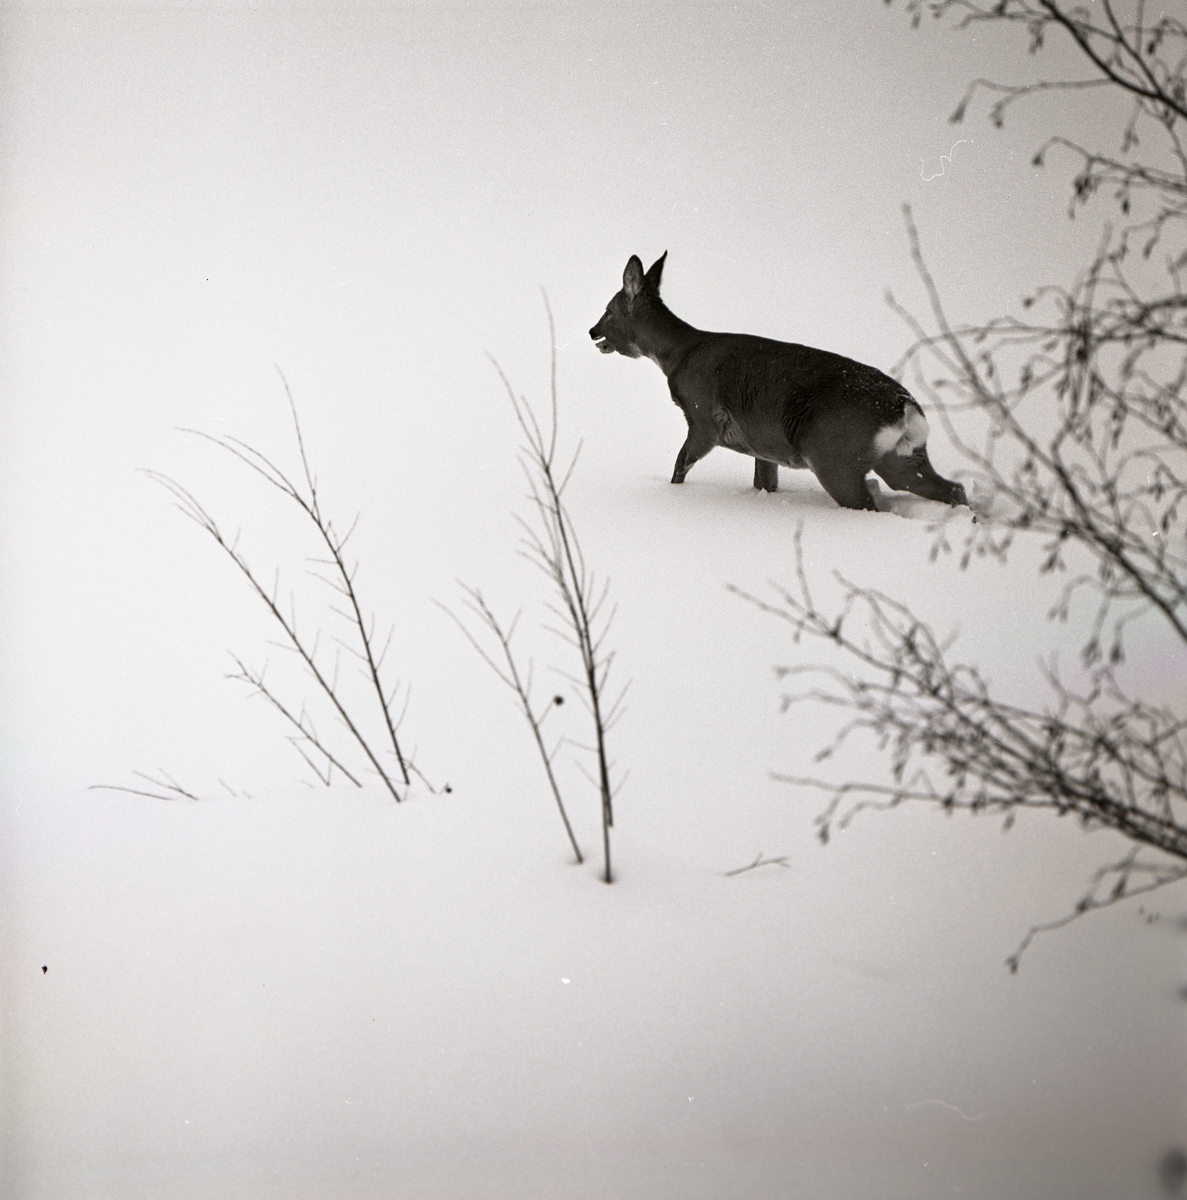 Ett rådjur vandrar i snö, 1966.